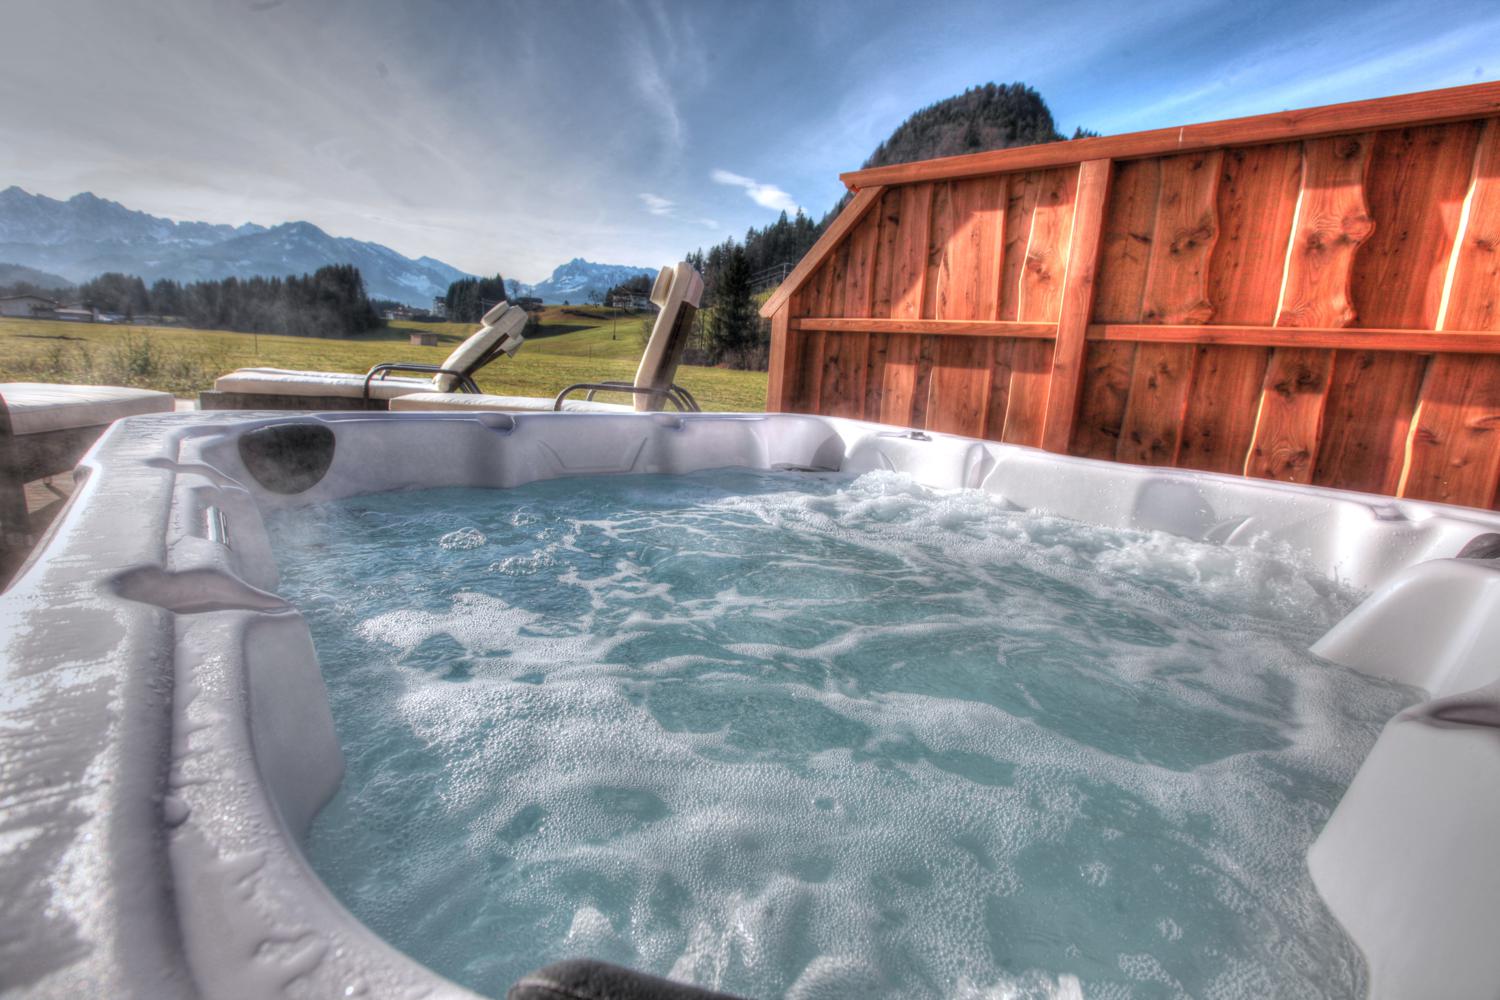 Luxus Chalet Aptm. 1-5 Gäste Sauna und Whirlpool - Wohnungen zur Miete in  Kössen, Tirol, Österreich - Airbnb